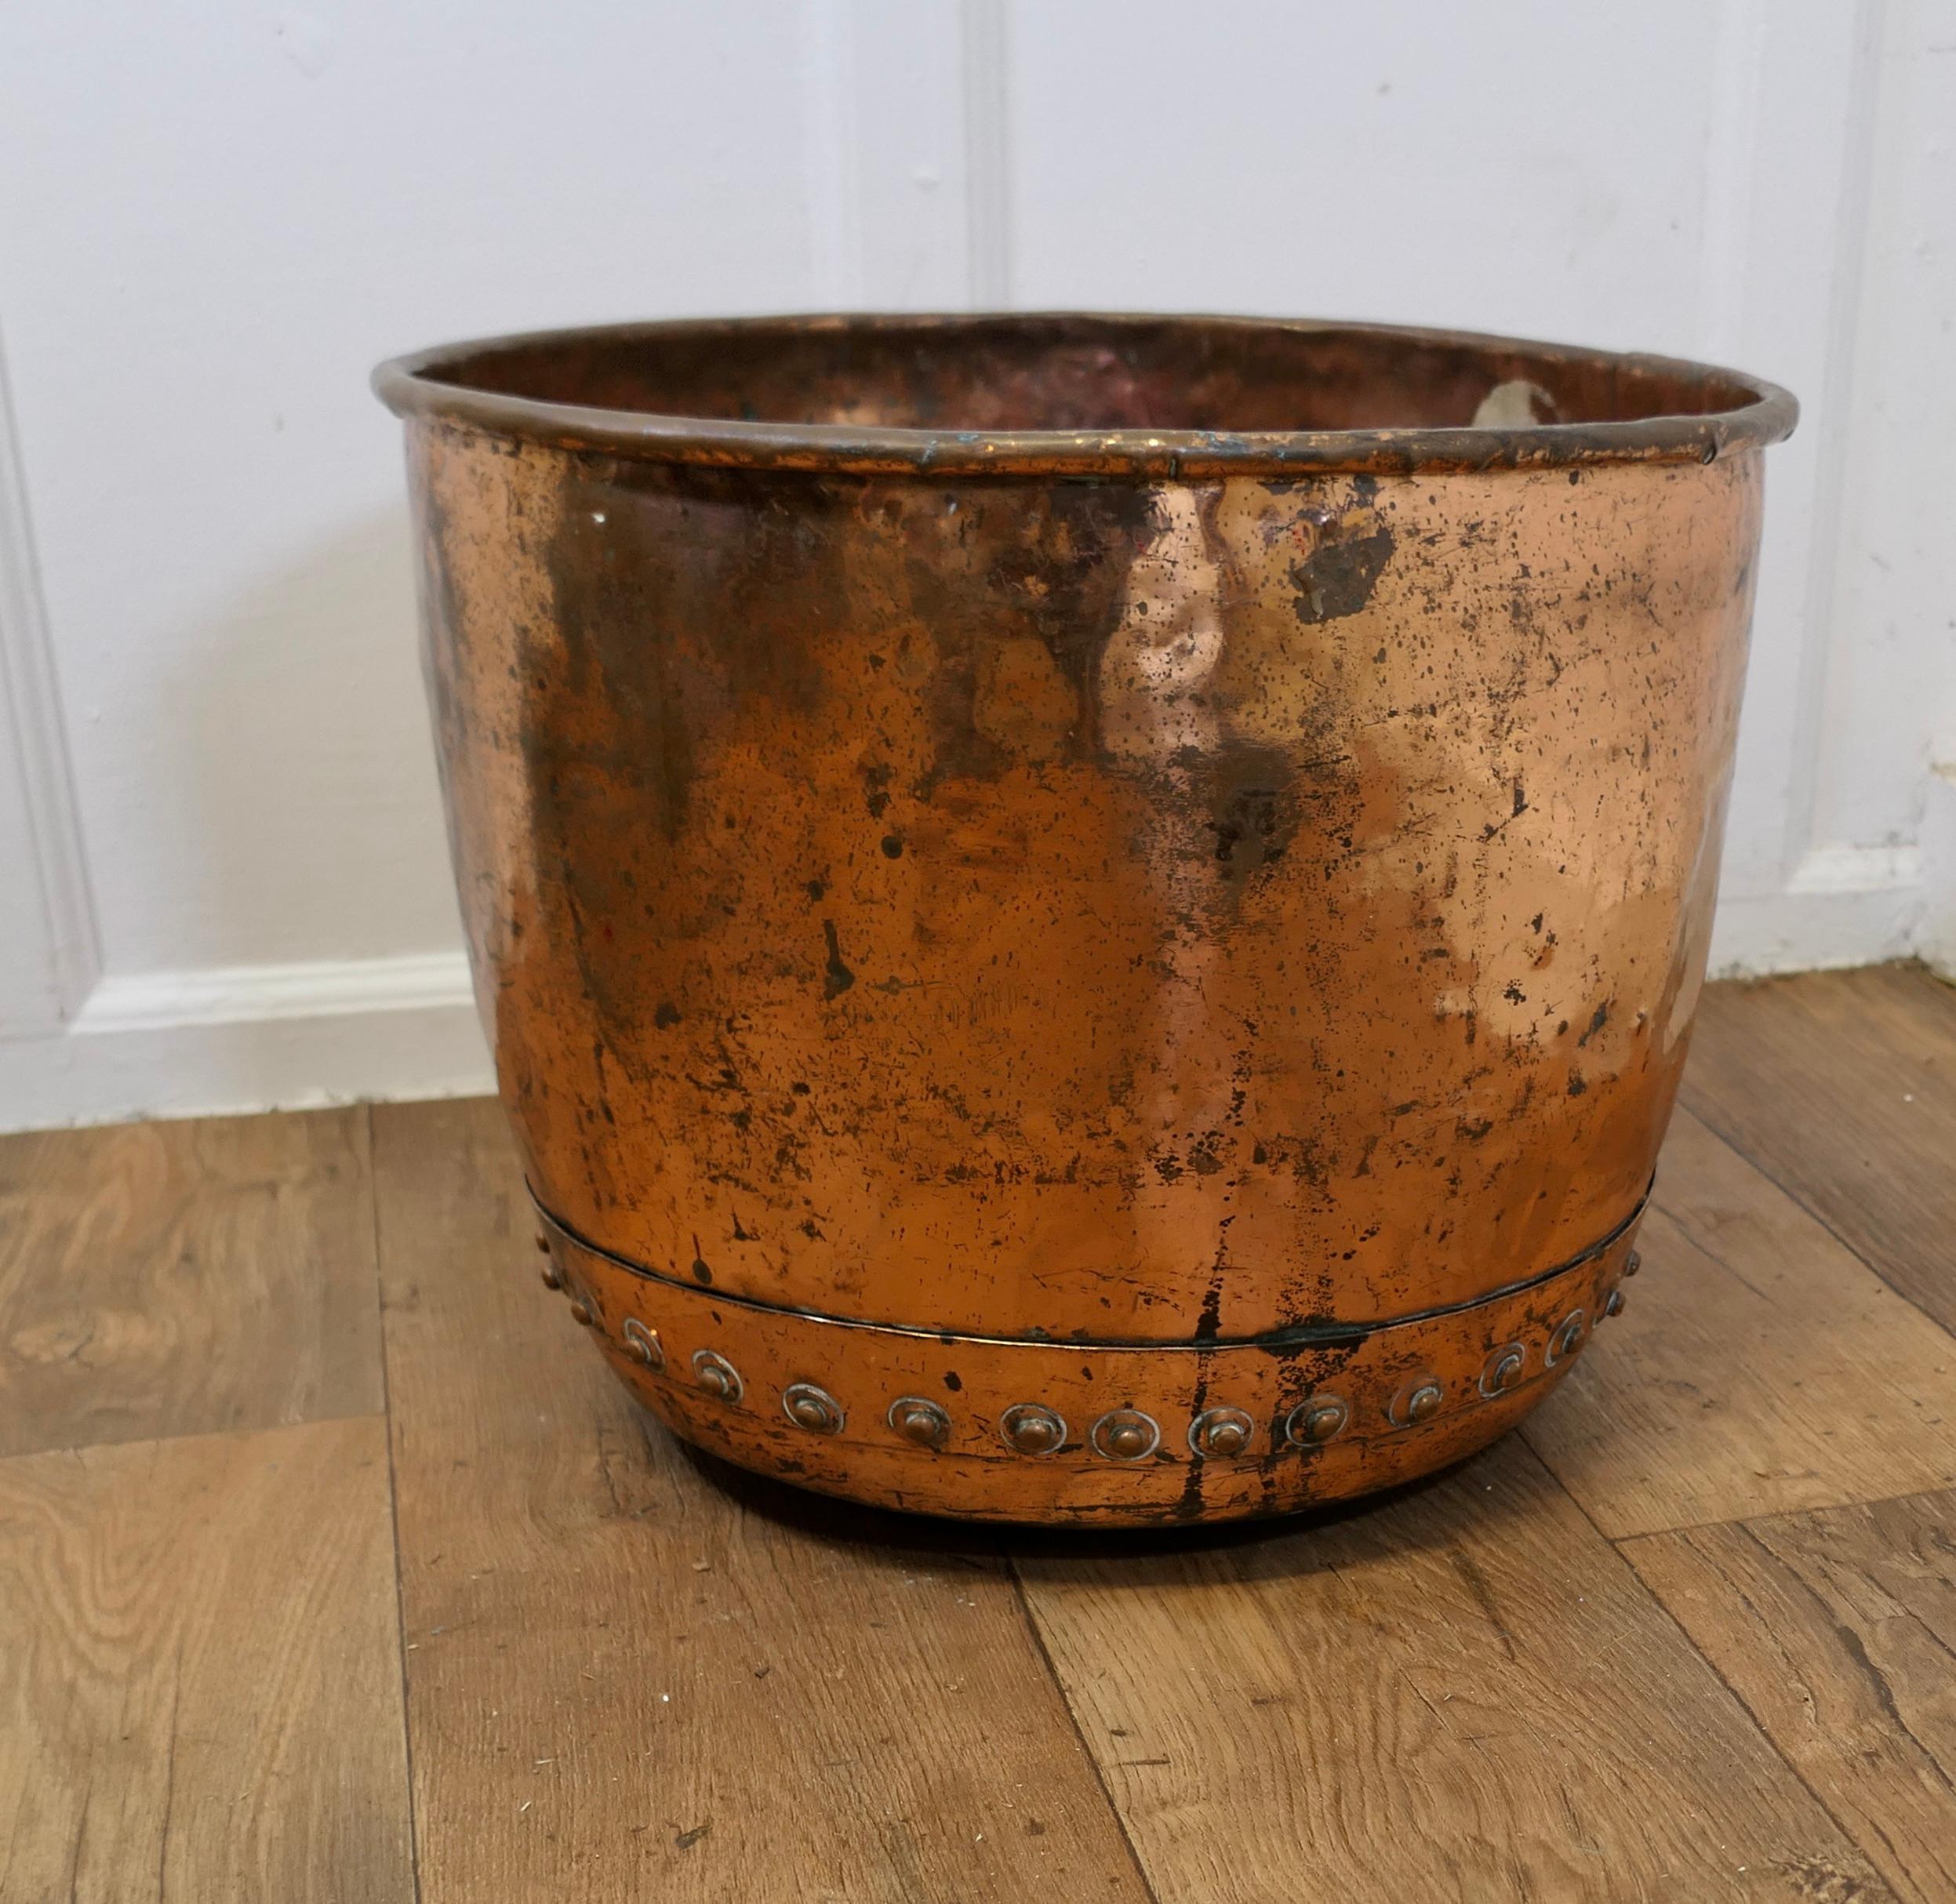 Kupfer Log Bin oder Cauldron-Pflanzgefäß aus dem 19. Jahrhundert

Dies ist eine überlegene Qualität Kupfer, es hat eine stark genietete Konstruktion, sehr stark mit einer guten Patina 

Der Copper Cauldron eignet sich gut als Holzkorb oder als